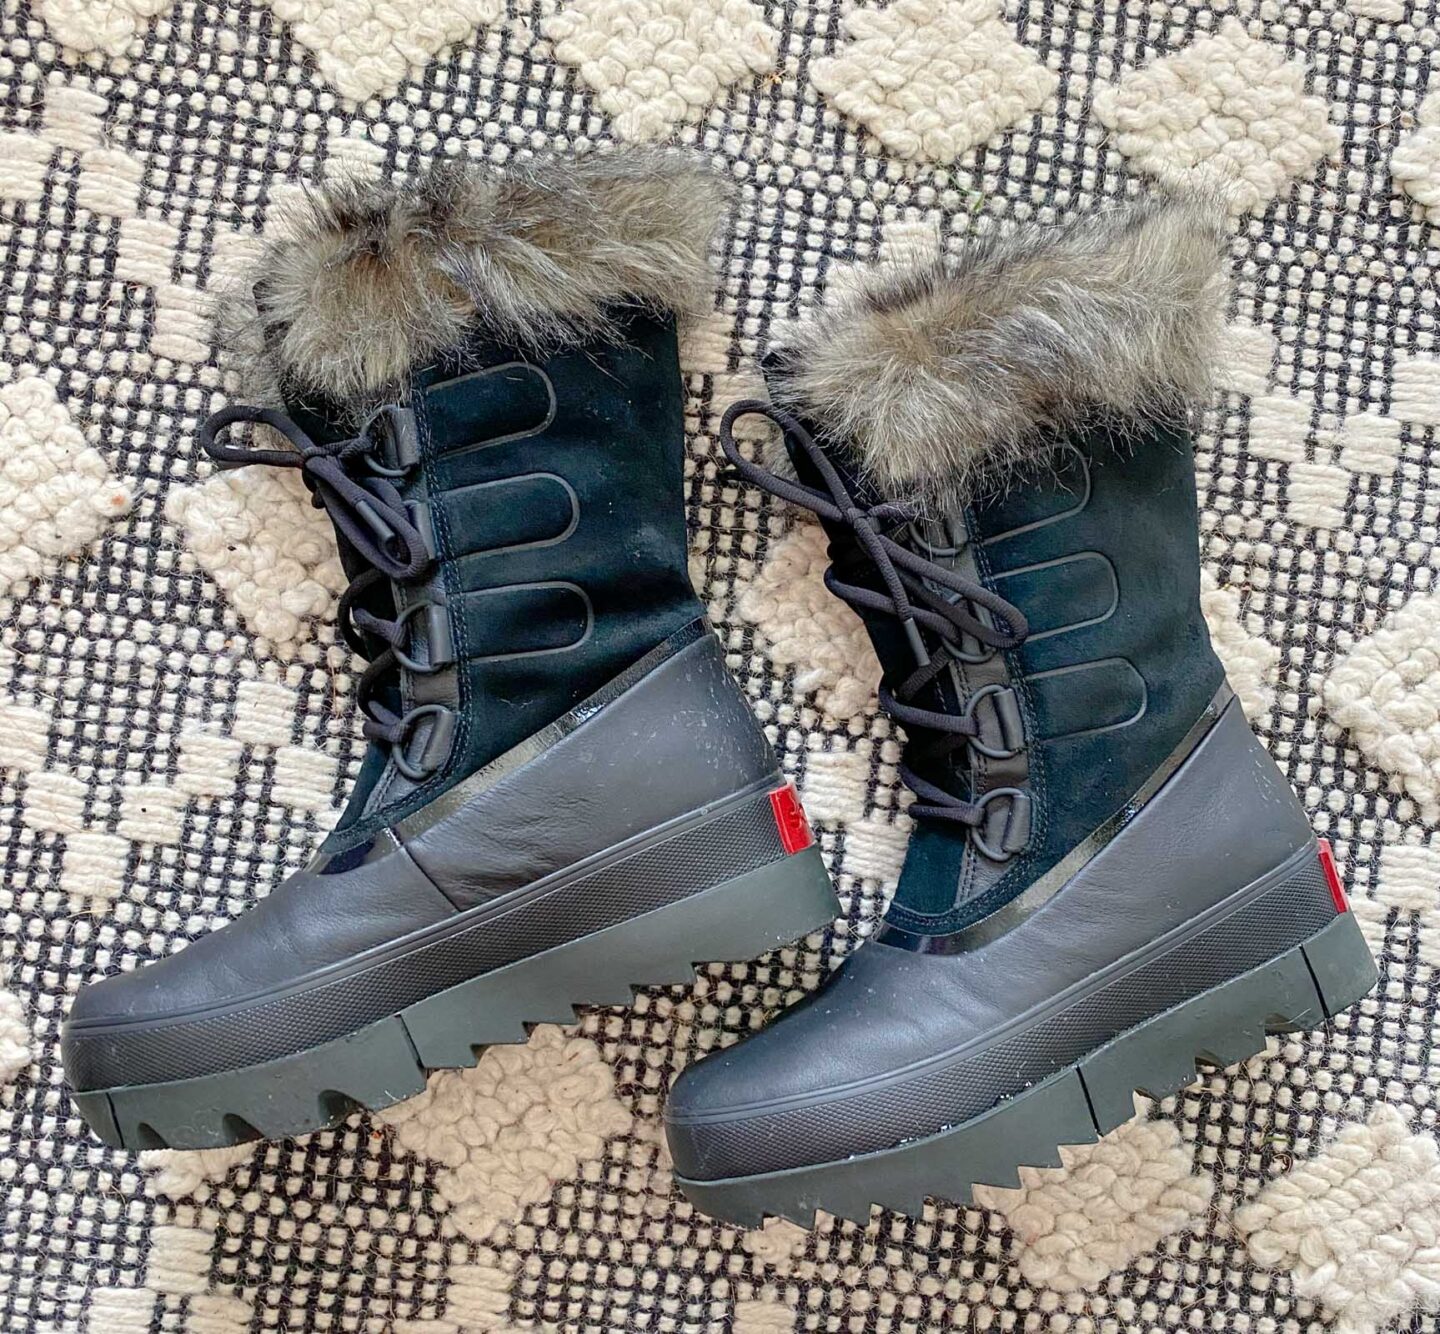 sorel joan of arctic next boots